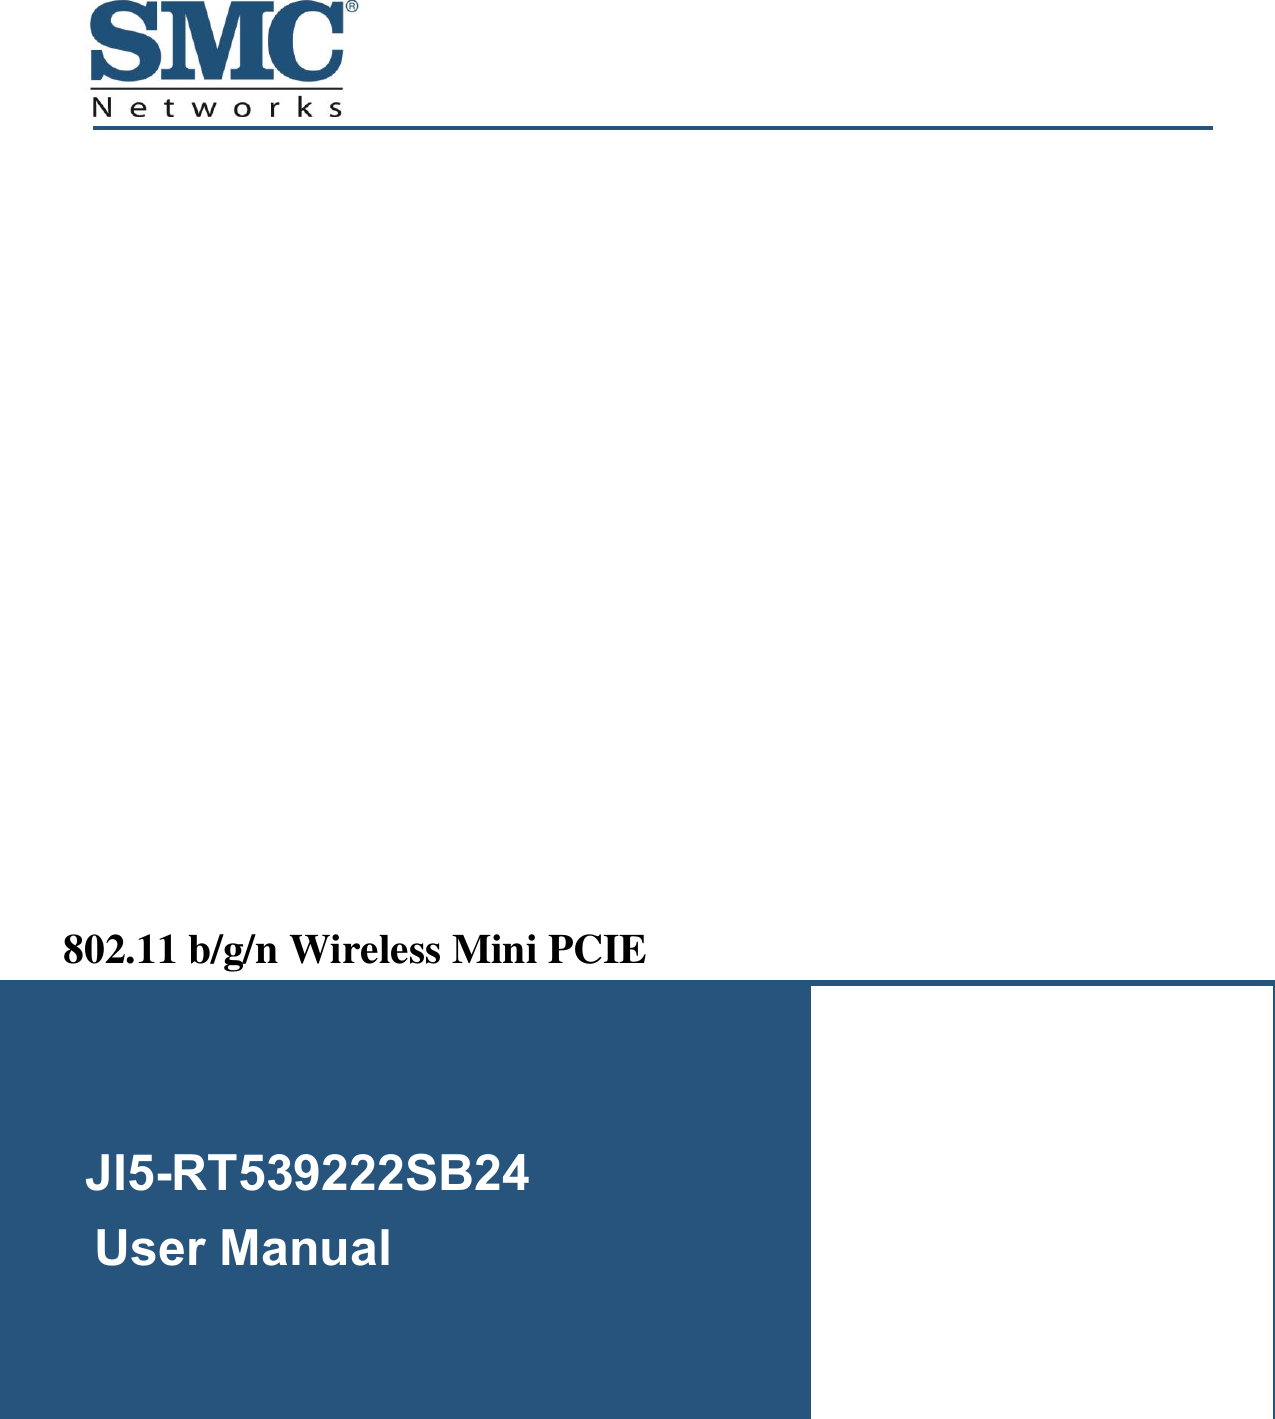    JI5-RT539222SB24           User Manual  802.11 b/g/n Wireless Mini PCIE         